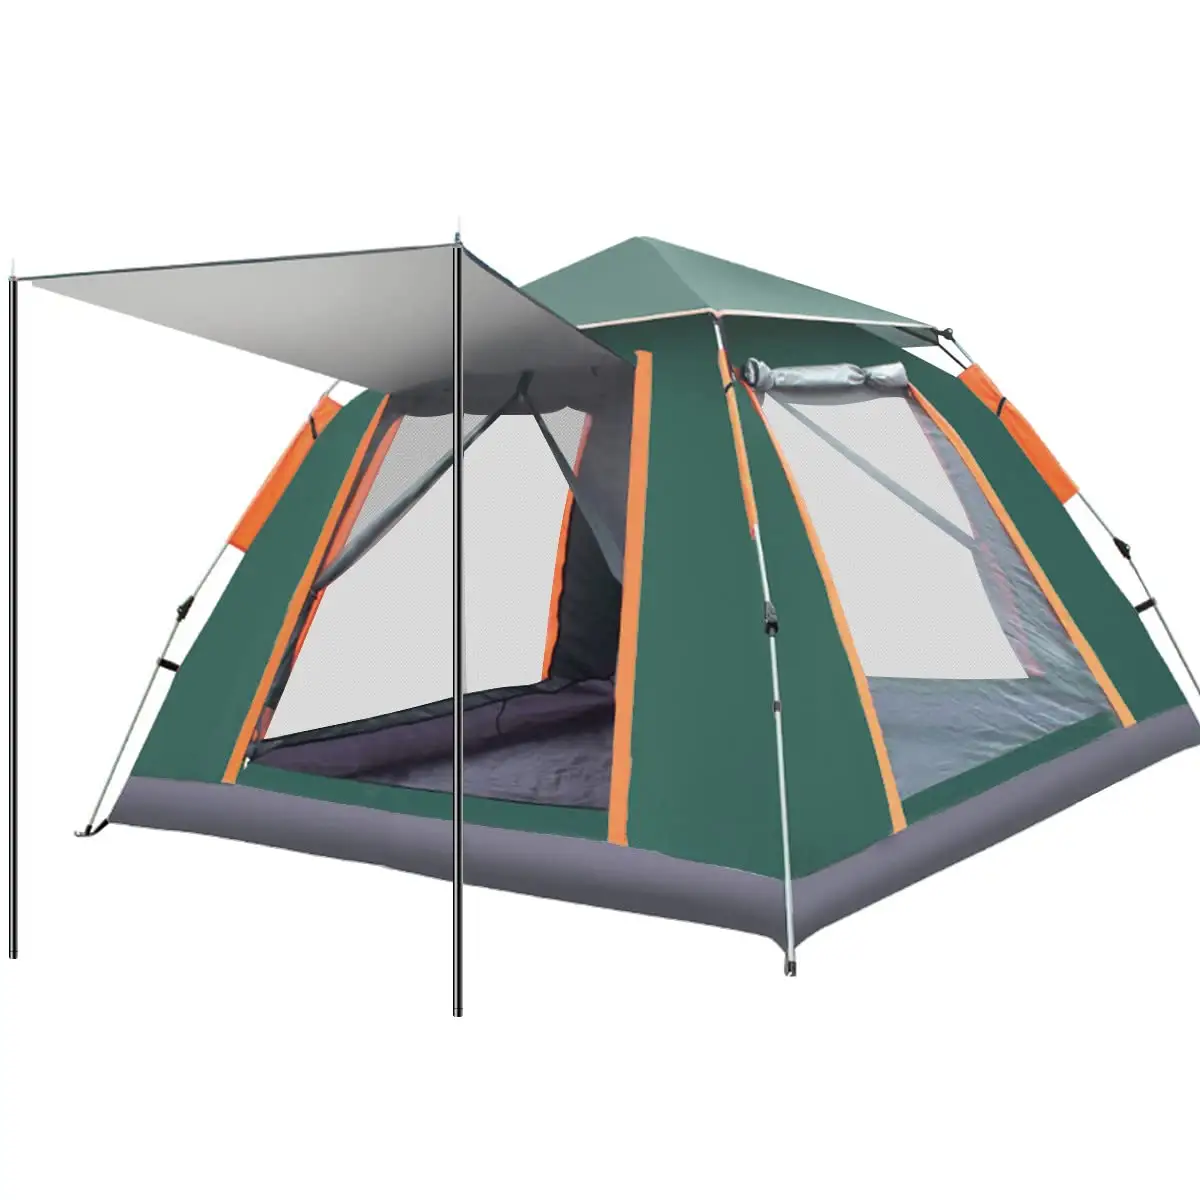 TOPIND tenda Kemah, mudah dipasang di luar ruangan Keluarga